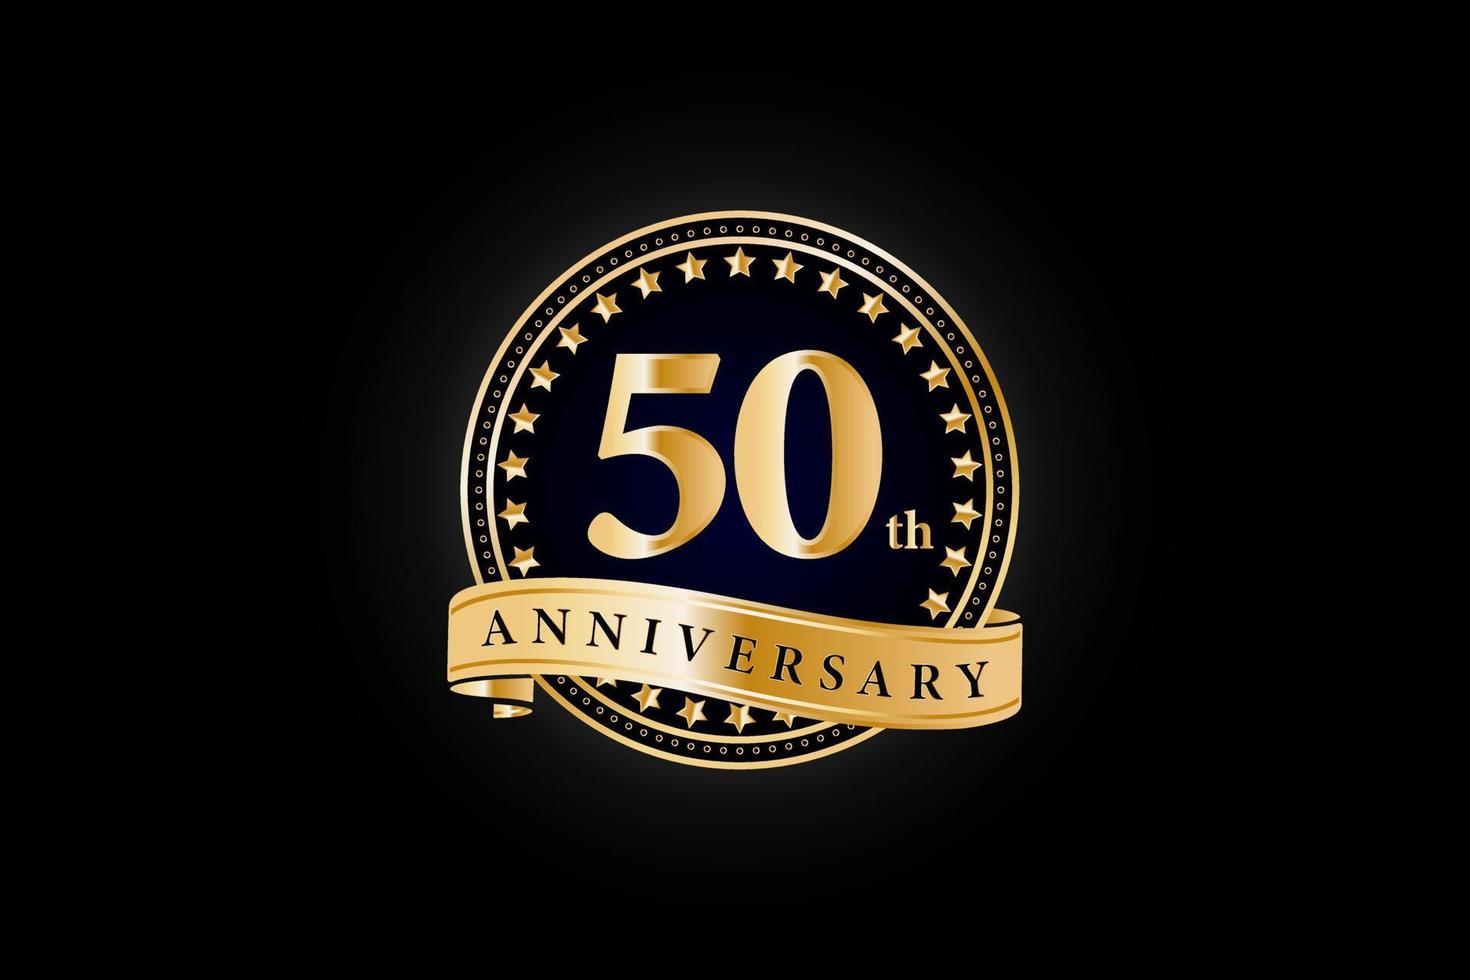 50:e årsdag gyllene guld logotyp med ringa och guld band isolerat på svart bakgrund, vektor design för firande.